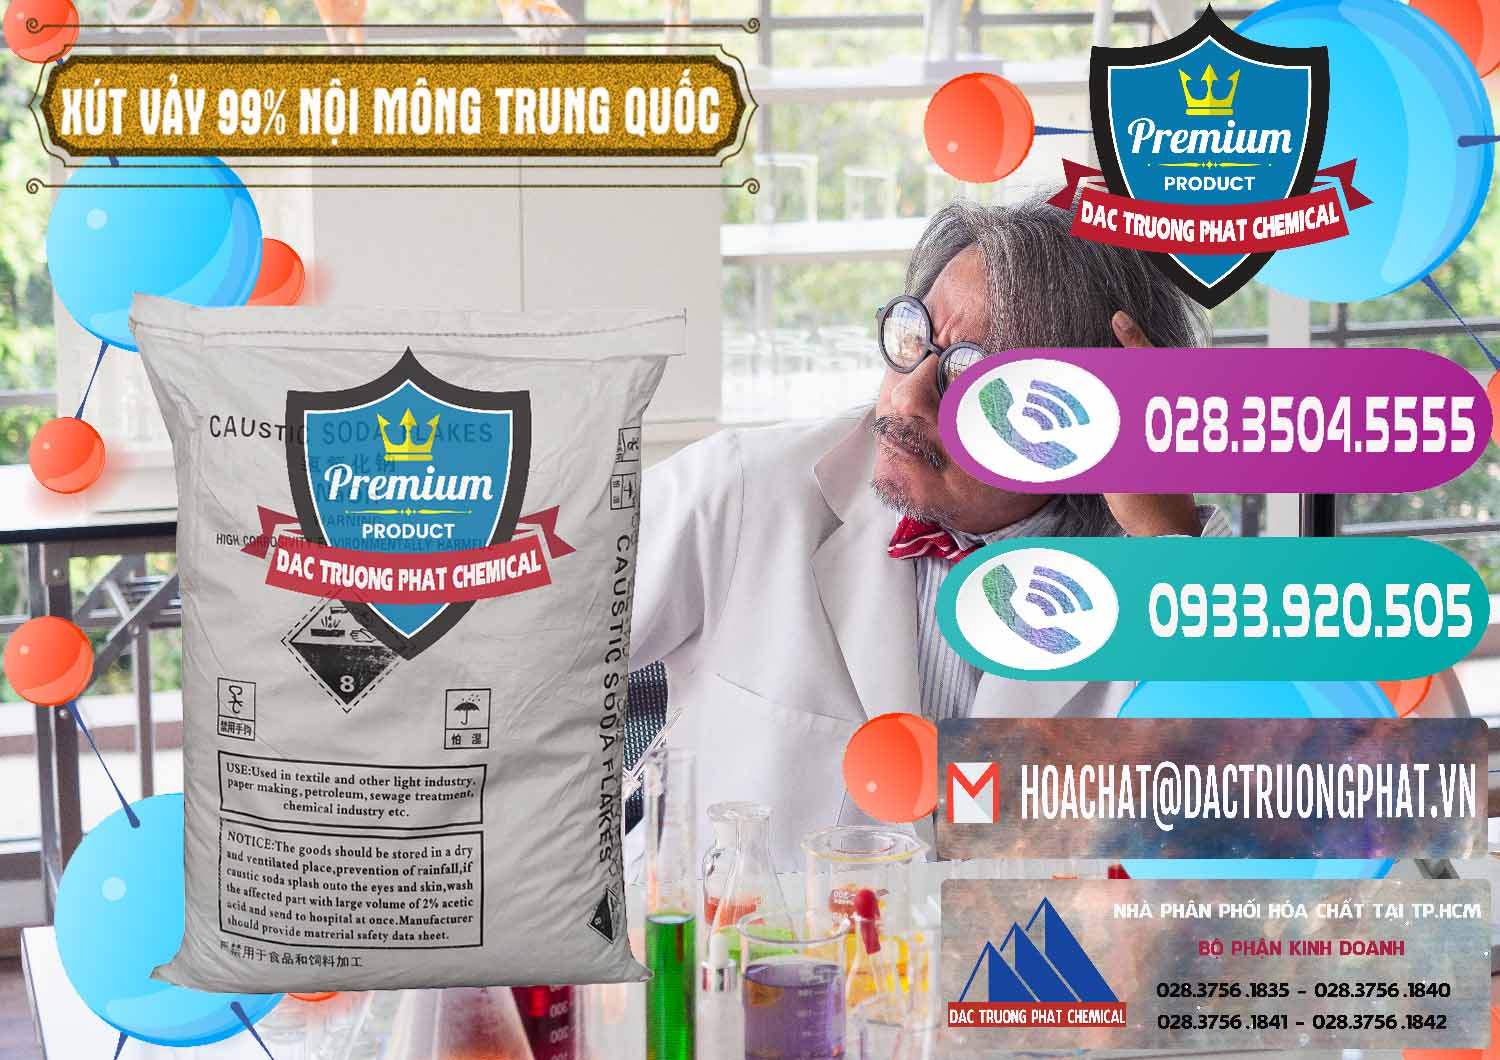 Cty bán và cung cấp Xút Vảy - NaOH Vảy 99% Nội Mông Trung Quốc China - 0228 - Phân phối và kinh doanh hóa chất tại TP.HCM - hoachatxulynuoc.com